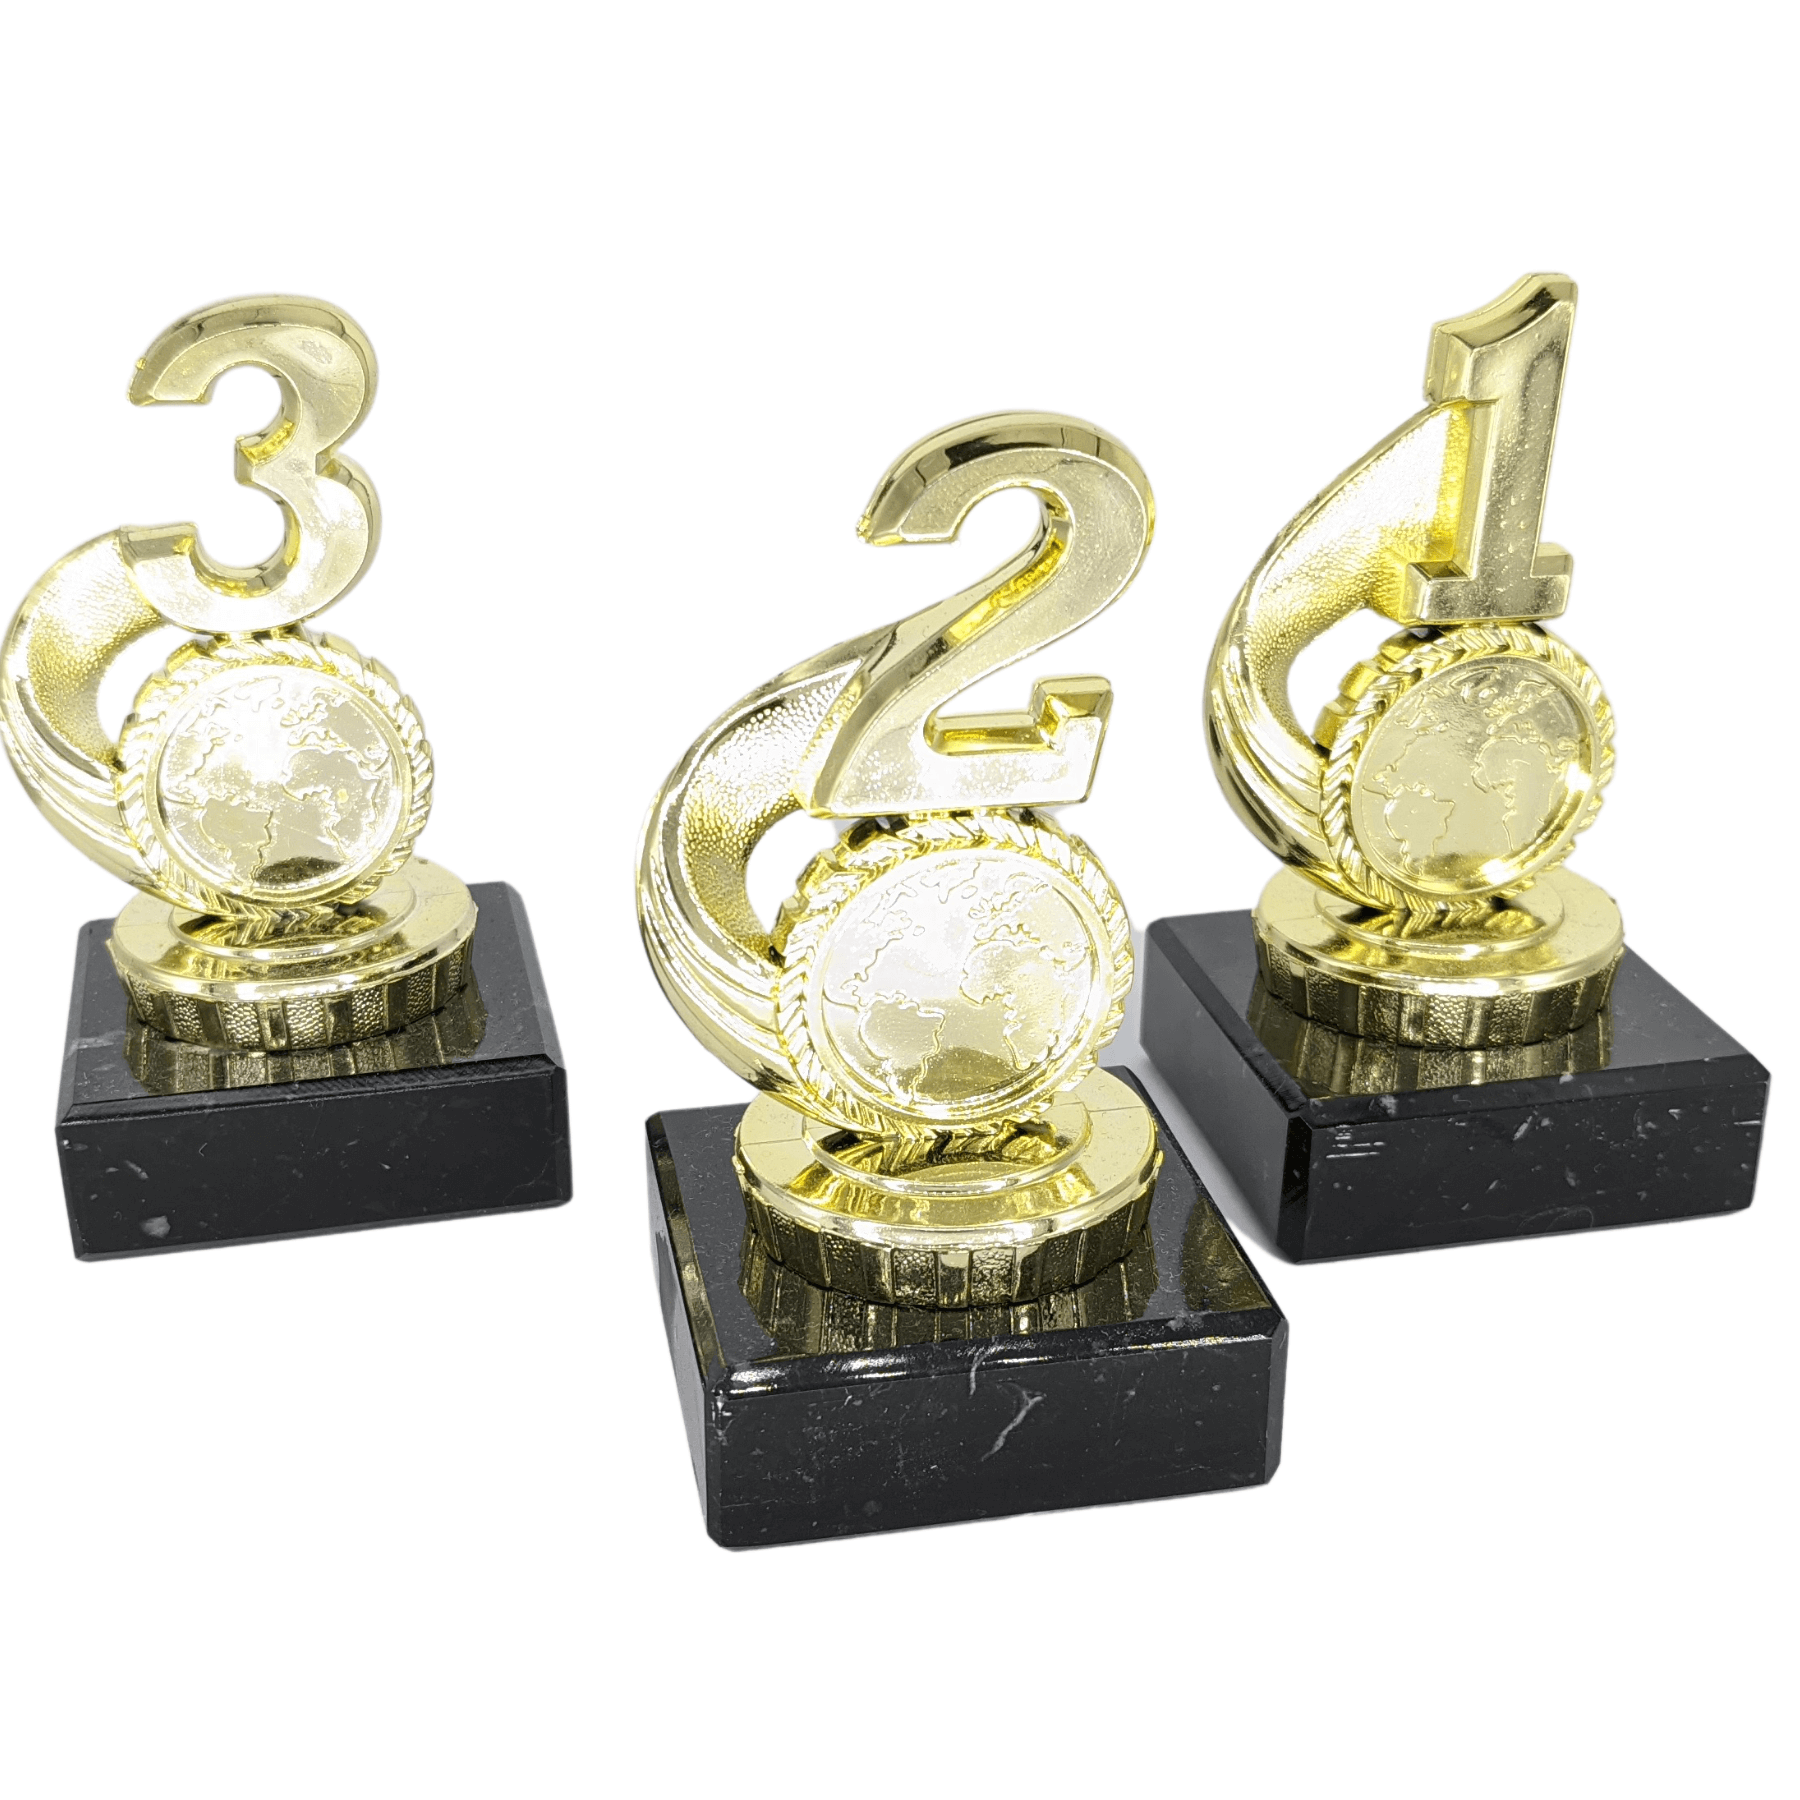 Minipokal Gold | Platz 1 bis 3 | Einzeln oder als 3er Serie | Personalisiert mit Wunschtext